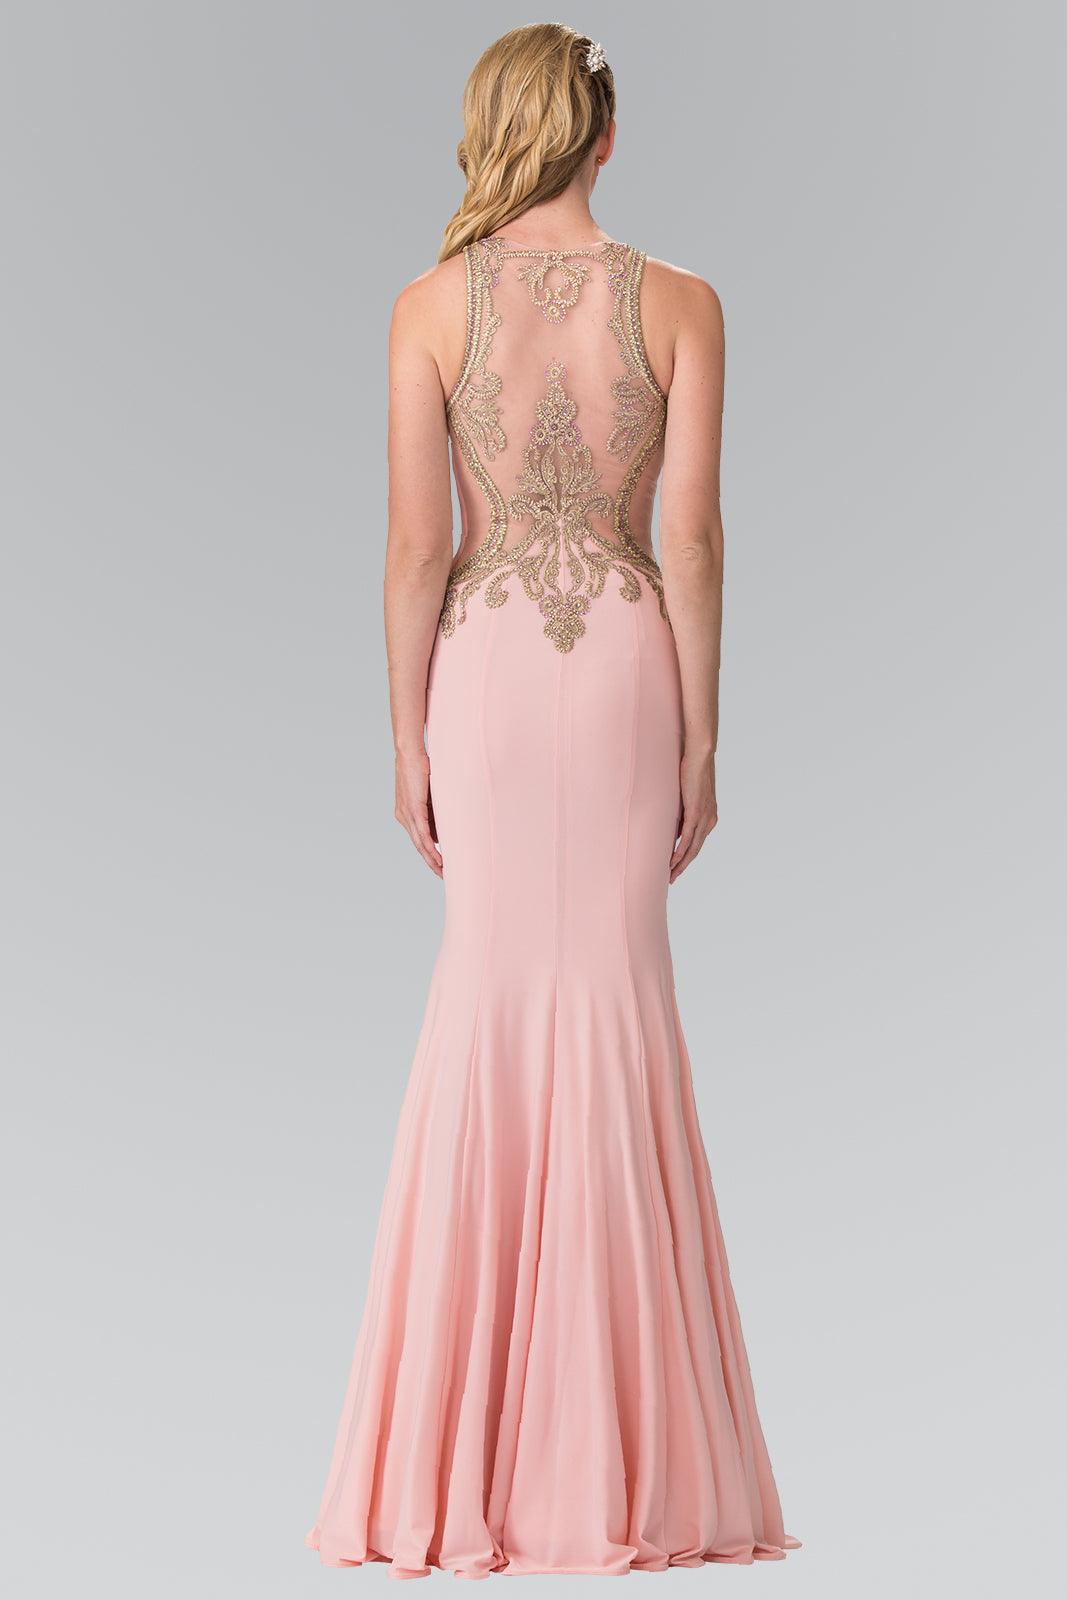 Prom Long Formal Fitted Halter Neck Evening Dress - The Dress Outlet Elizabeth K